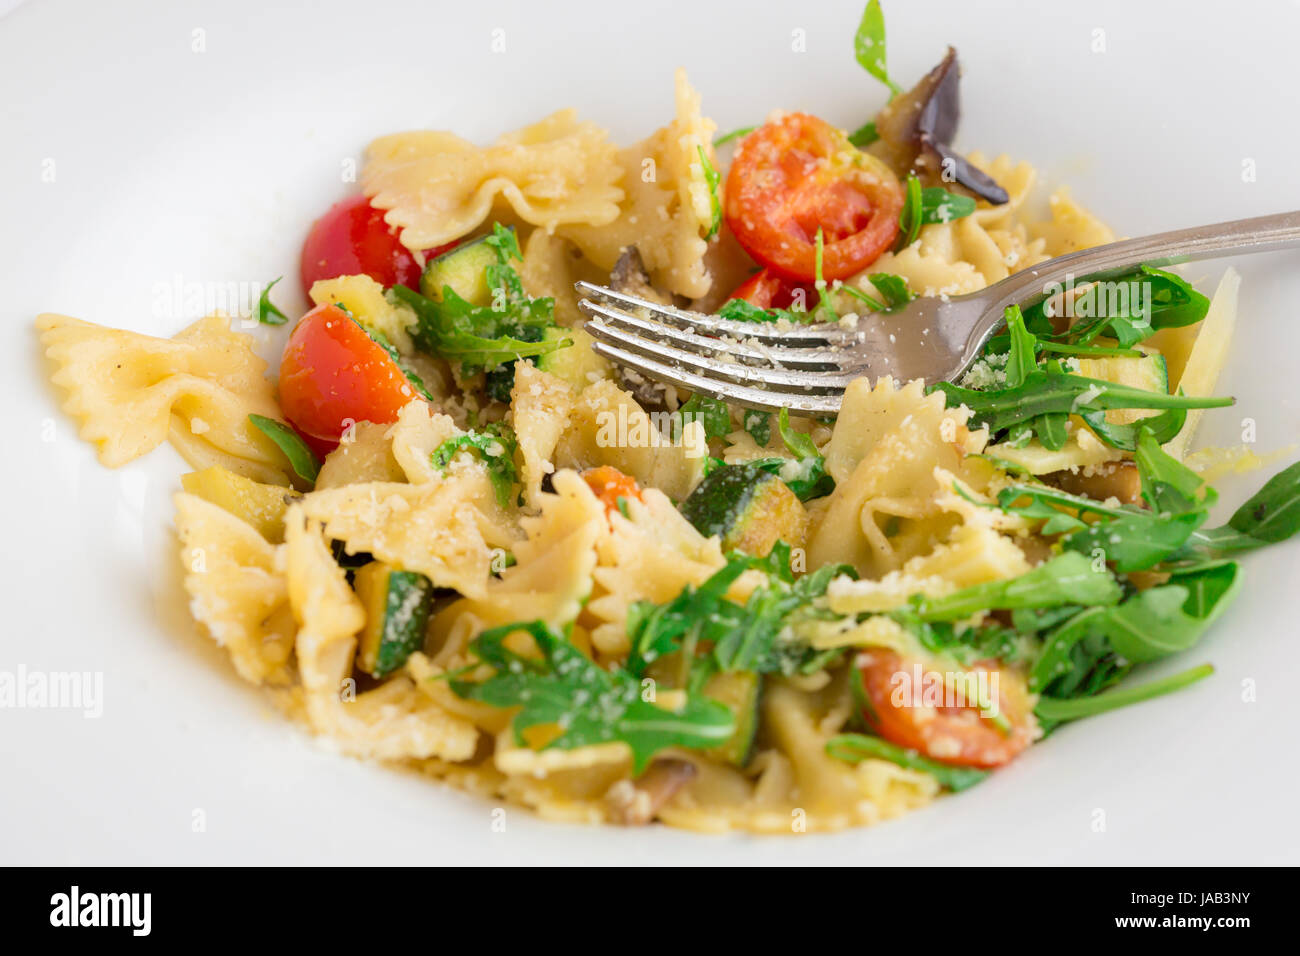 Ein typisch italienisches Nudelgericht serviert in einer weißen Schale. Dieses Rezept basiert auf Tomaten, Basilikum, Olivenöl und Rucula und Knoblauch. Stockfoto